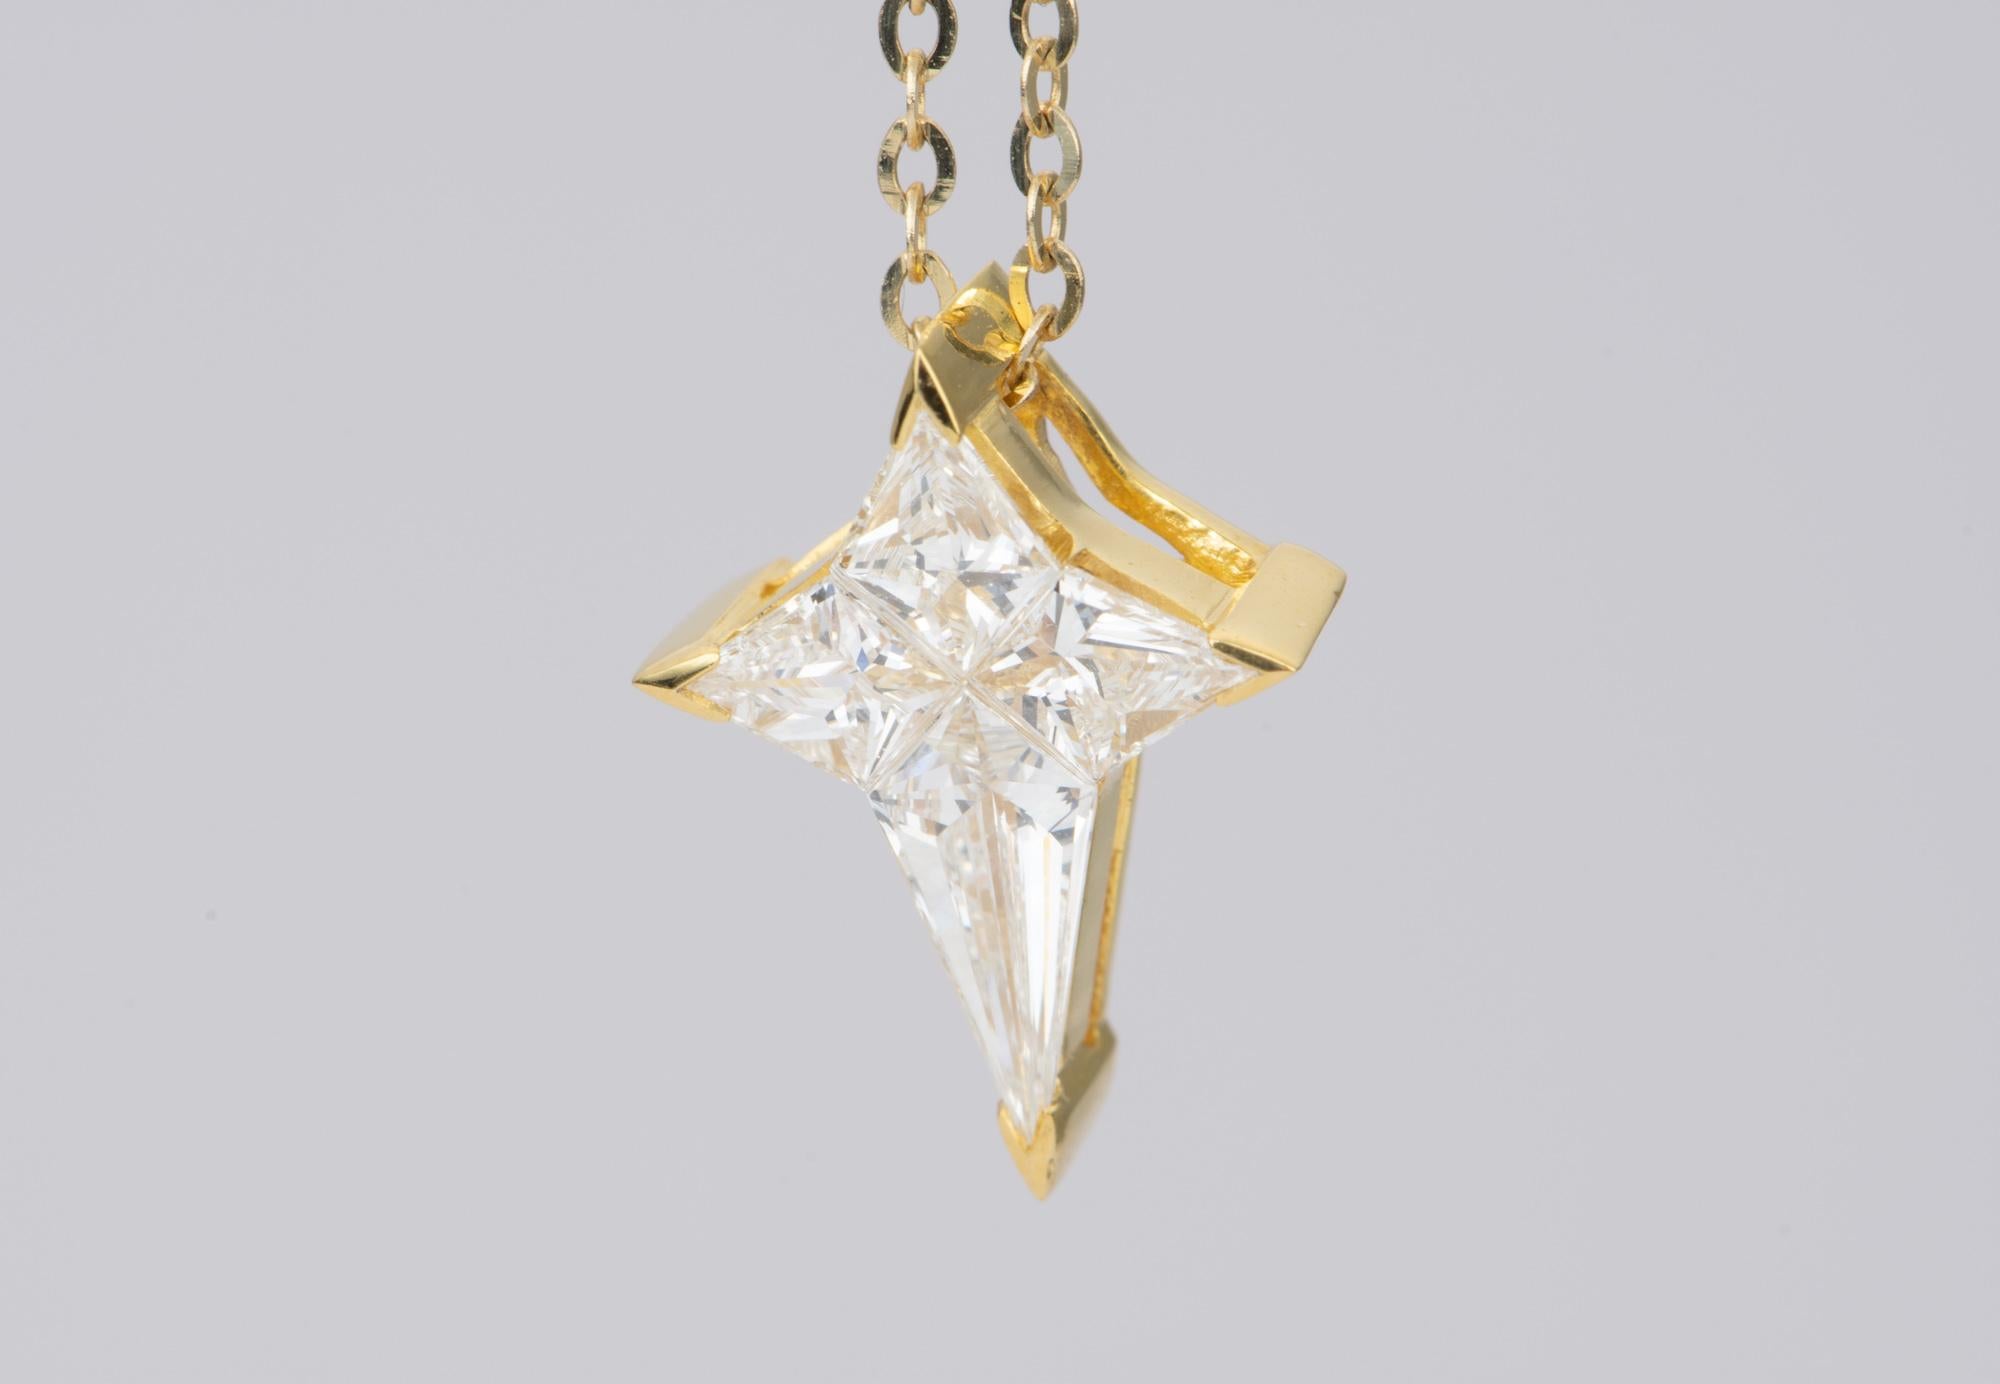 Kite Cut Diamond Star 18k Yellow Gold Pendant Necklace Invisible Setting Unique AD1922v1